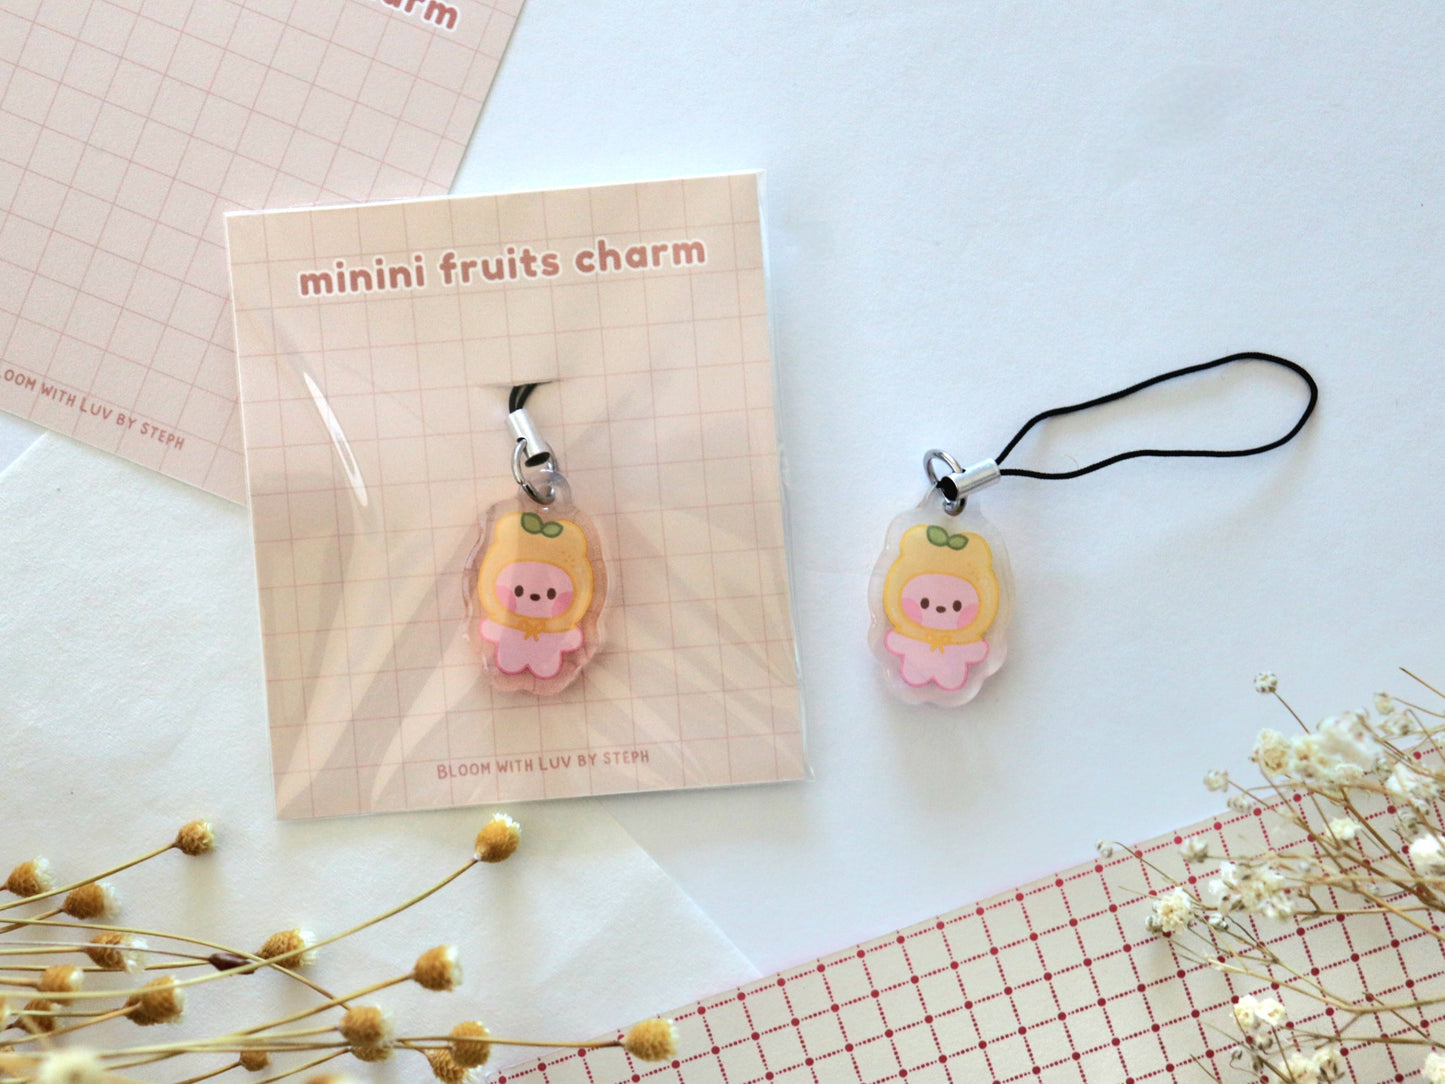 Minini Fruits Mini Charms